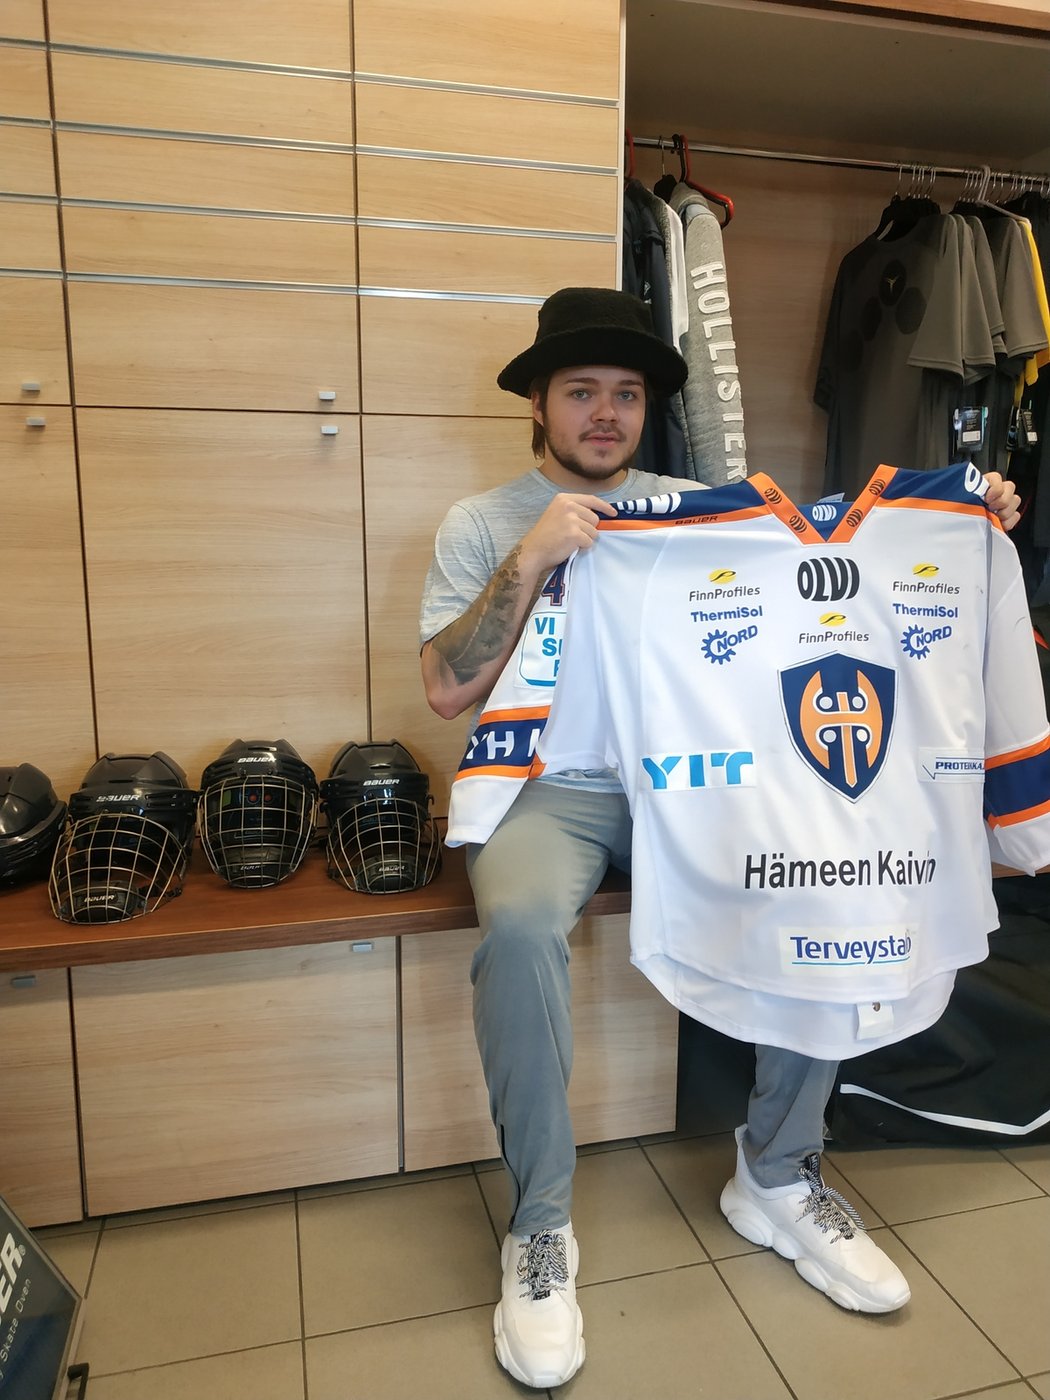 Český brankář Dominik Hrachovina se v nové sezoně vrátí do Tappary Tampere, tedy do klubu, ve kterém vyrostl do seniorského hokeje a vychytal tam dva mistrovské tituly